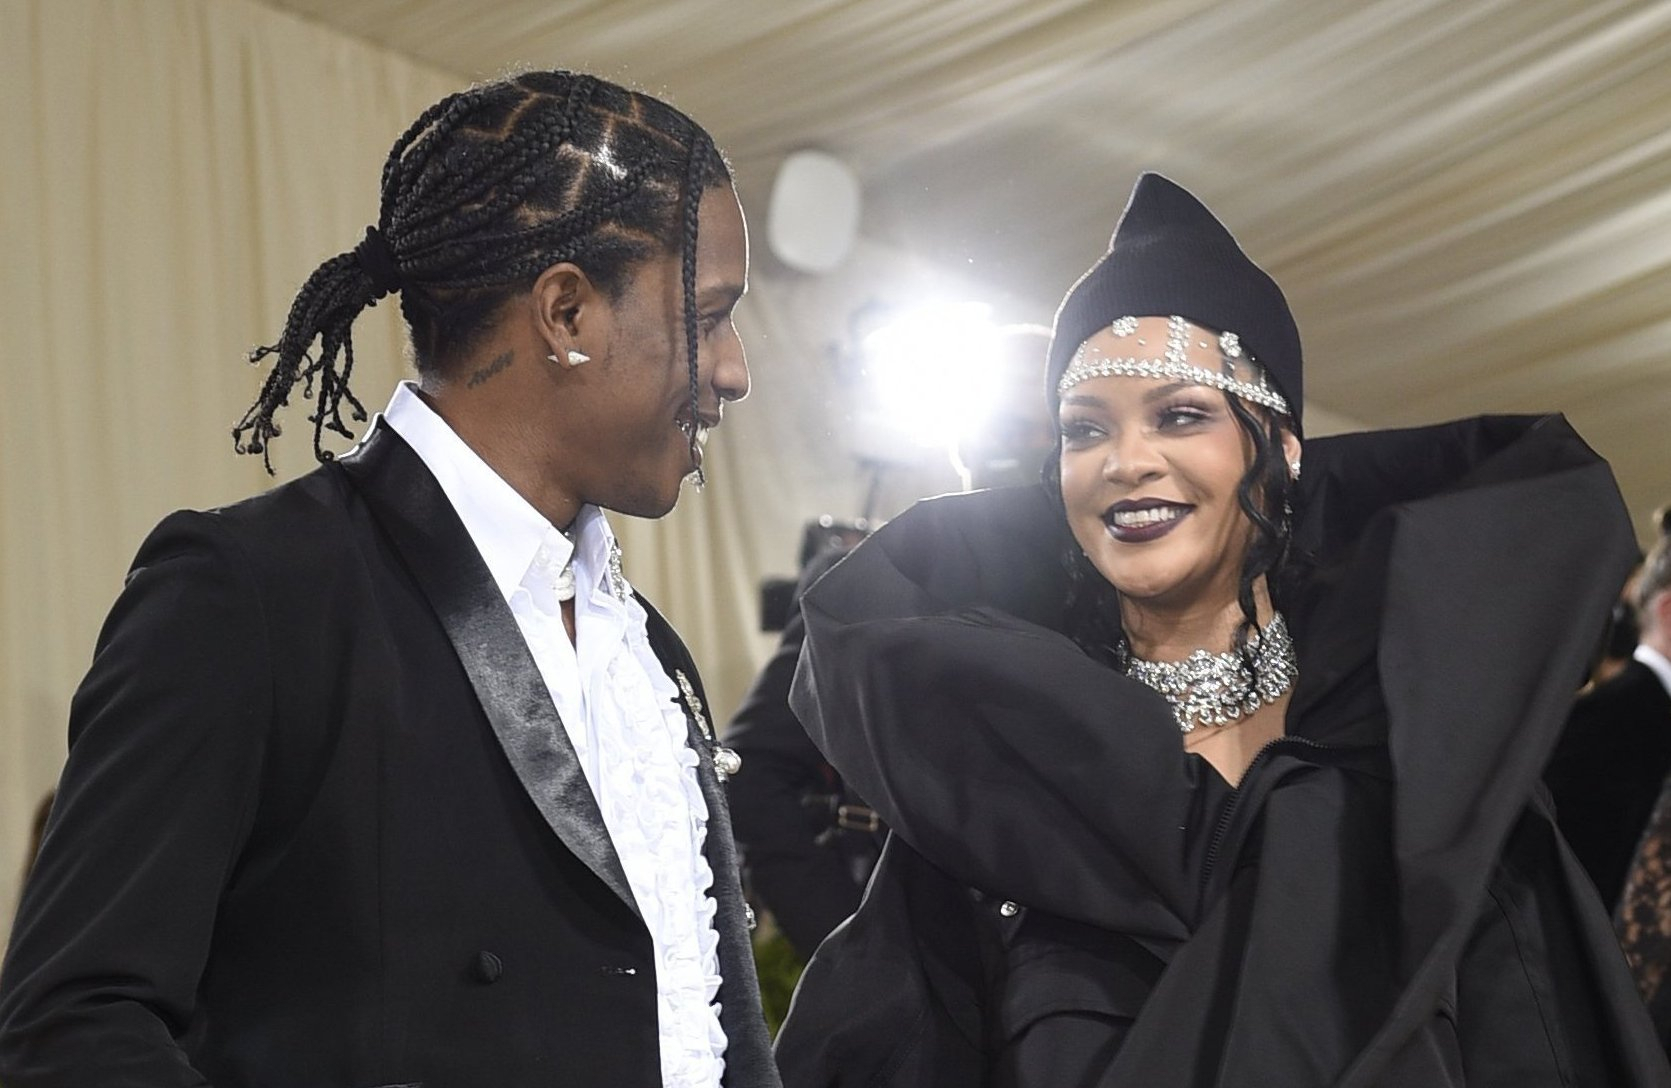 Medienberichten zufolge sind Rihanna und ihr Freund Asap Rocky am 13. Mai Eltern geworden. (Archivbild)